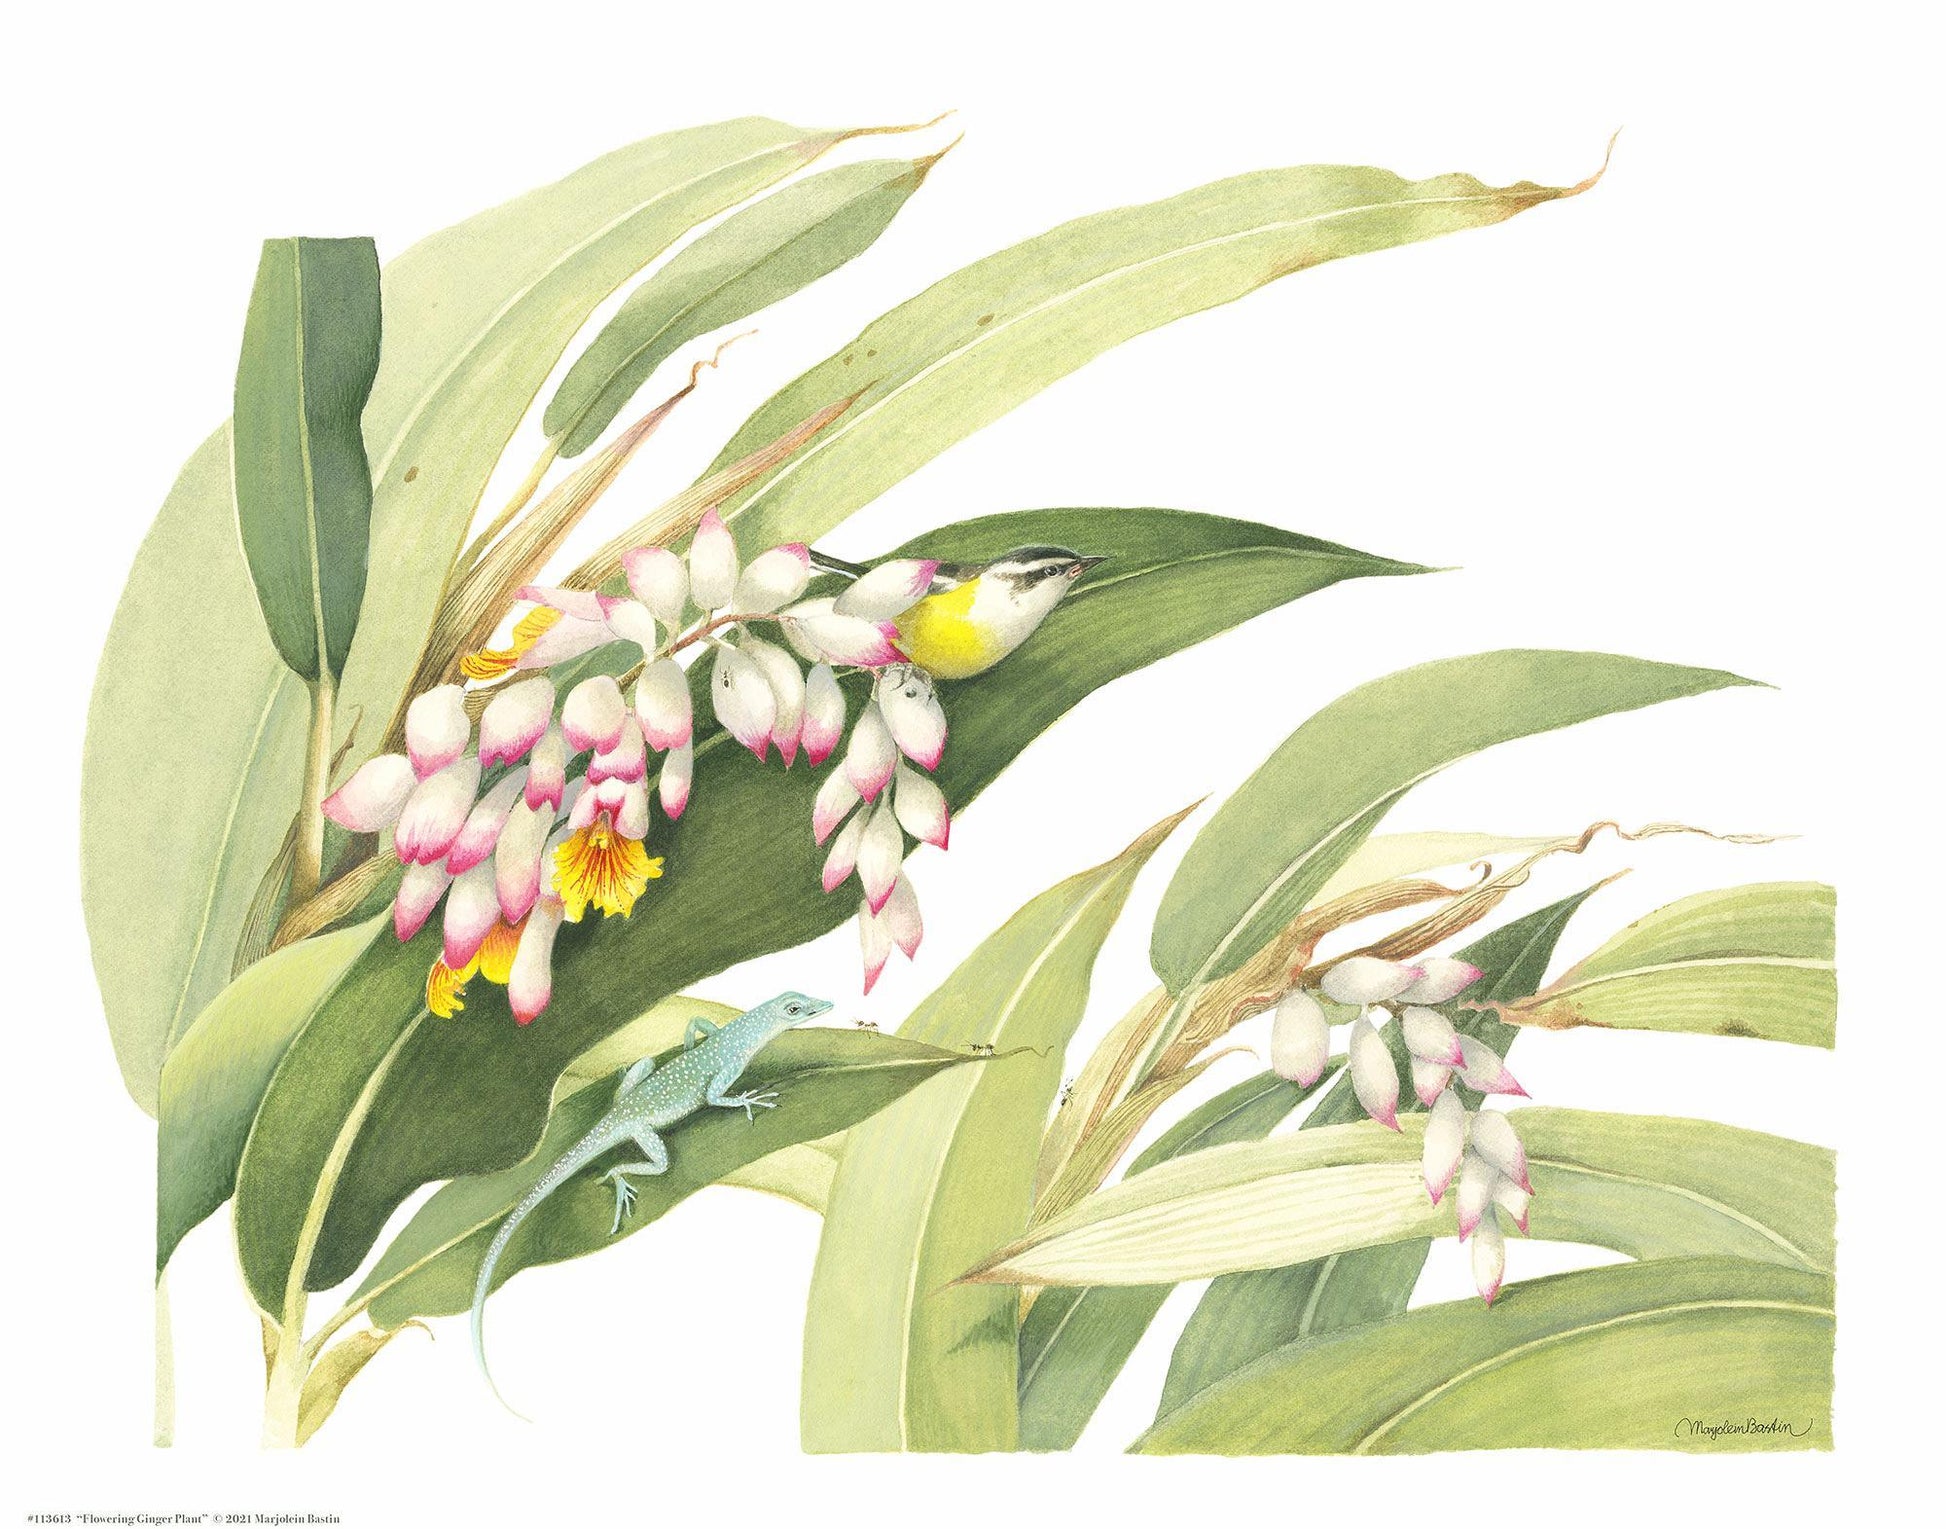 flowering-ginger-plant14x11-apbastin-1058225026.jpg